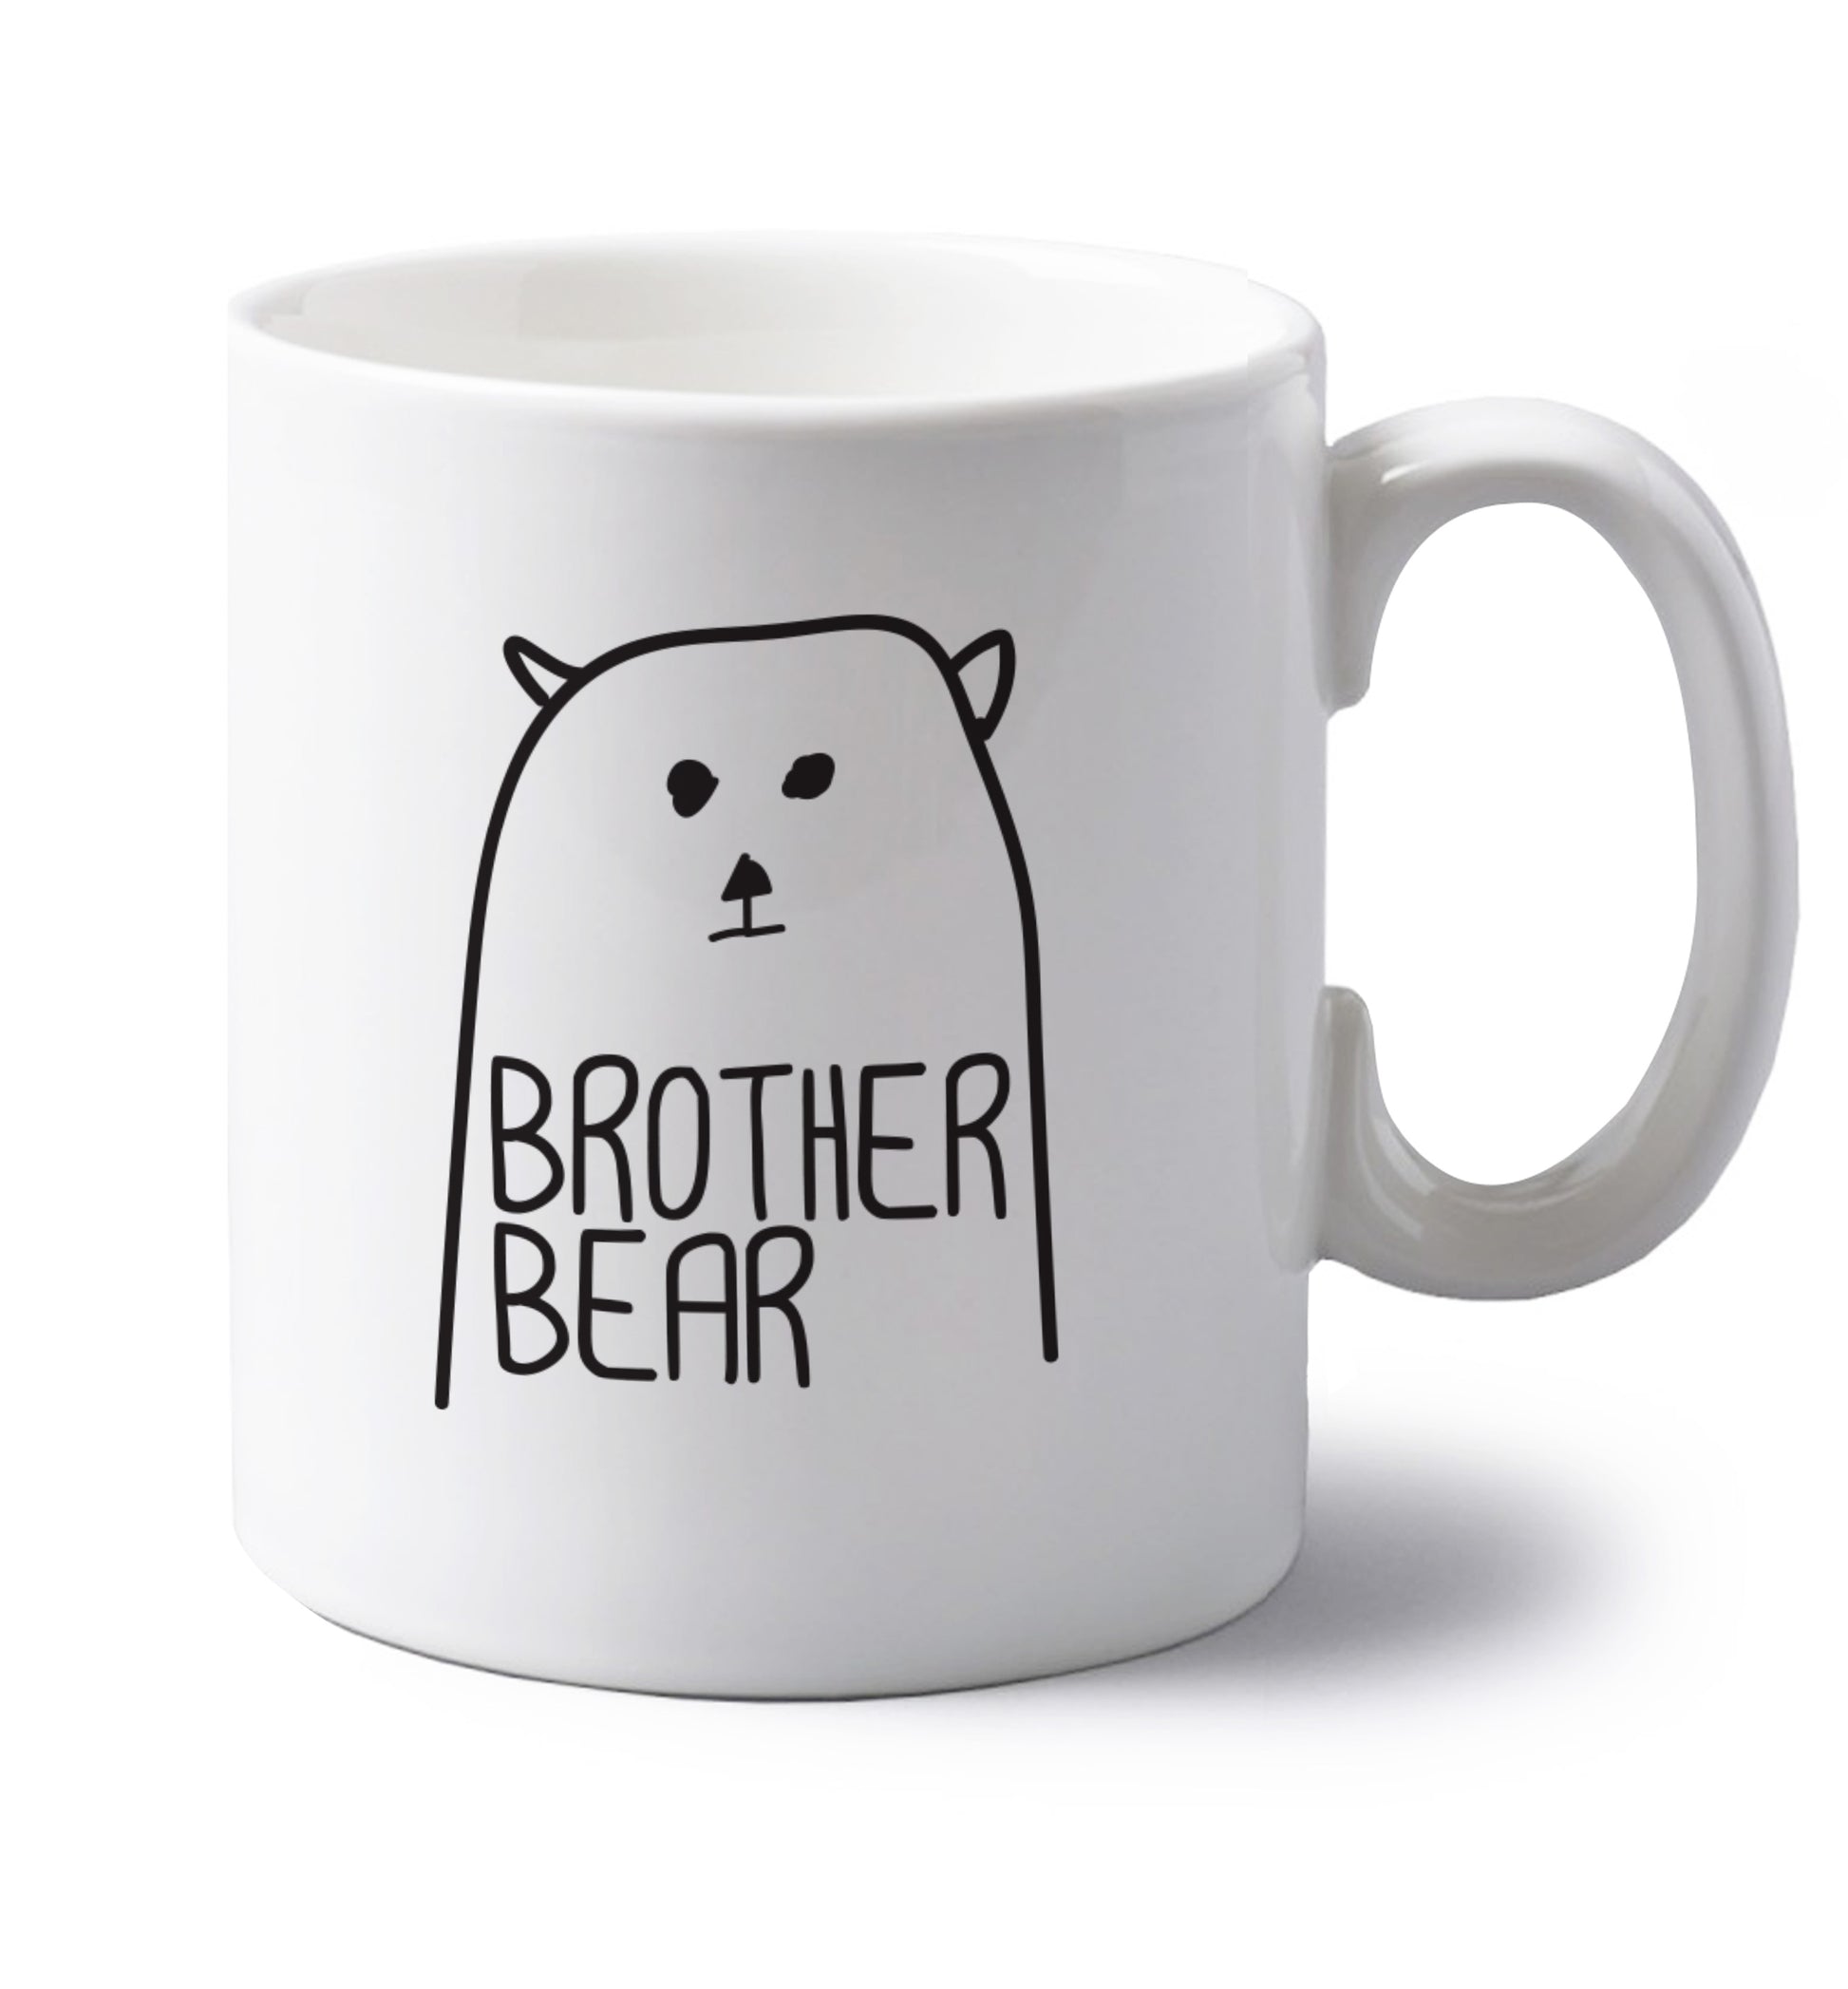 Brother bear left handed white ceramic mug 